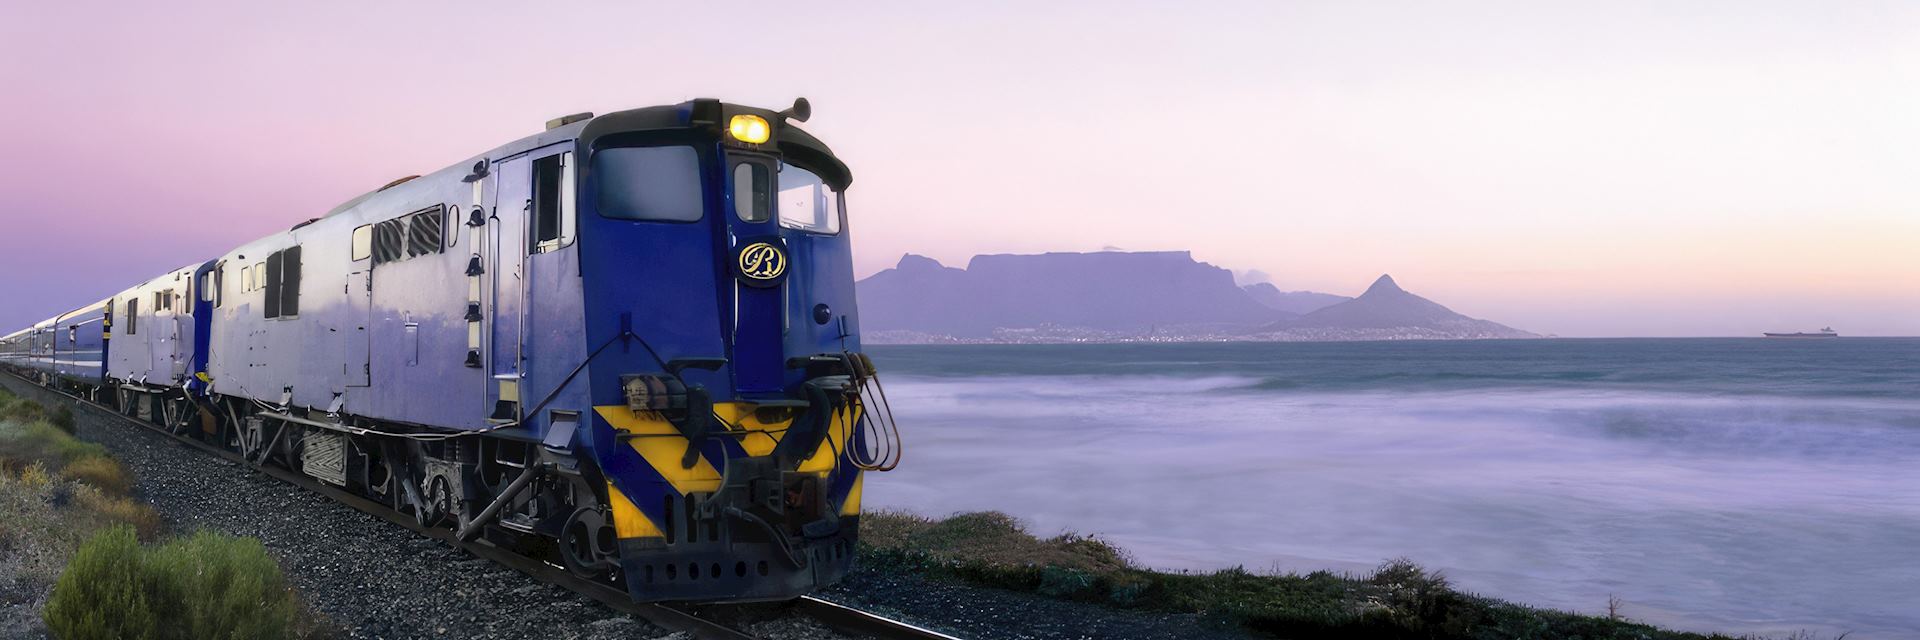 Blue Train near Table Mountain